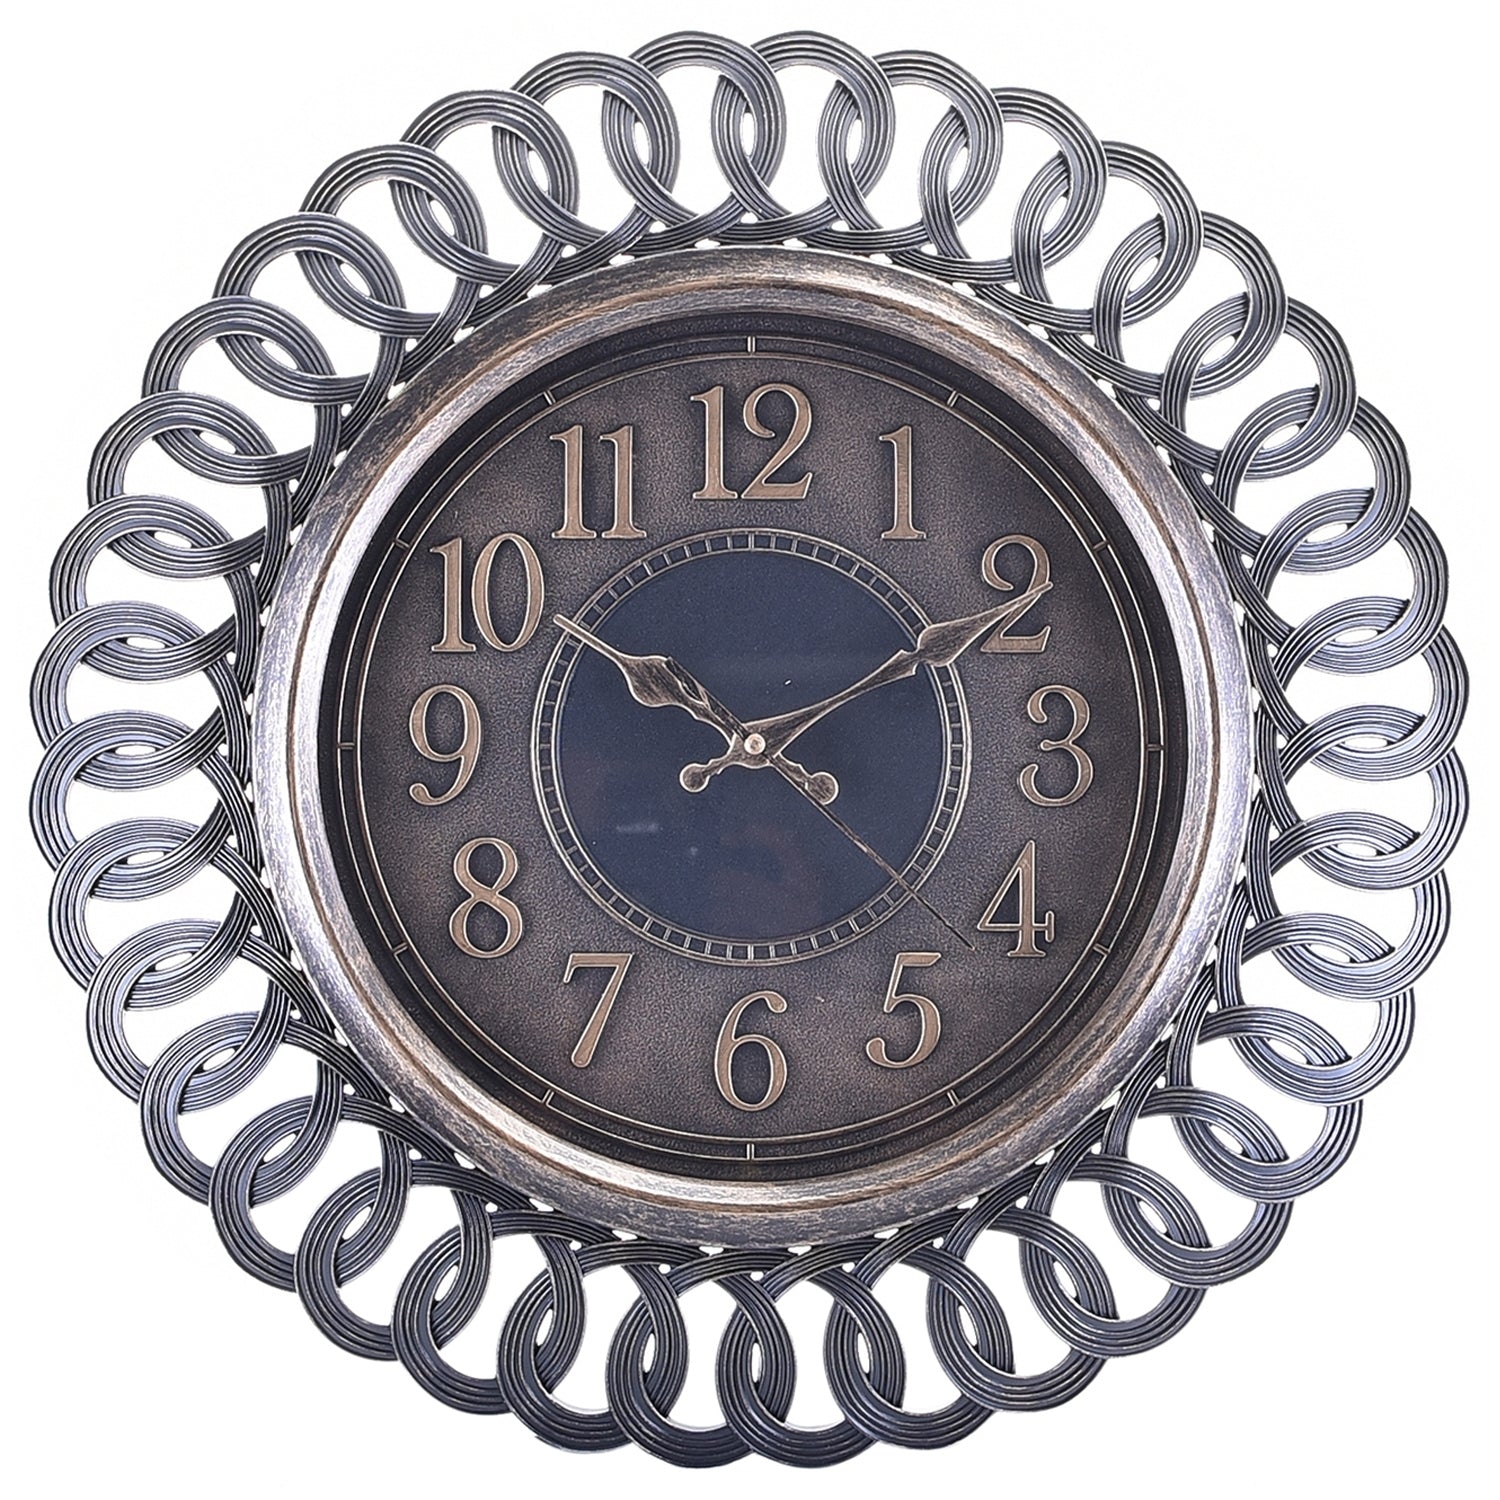 Premium Antique Design Analog Wall Clock 4